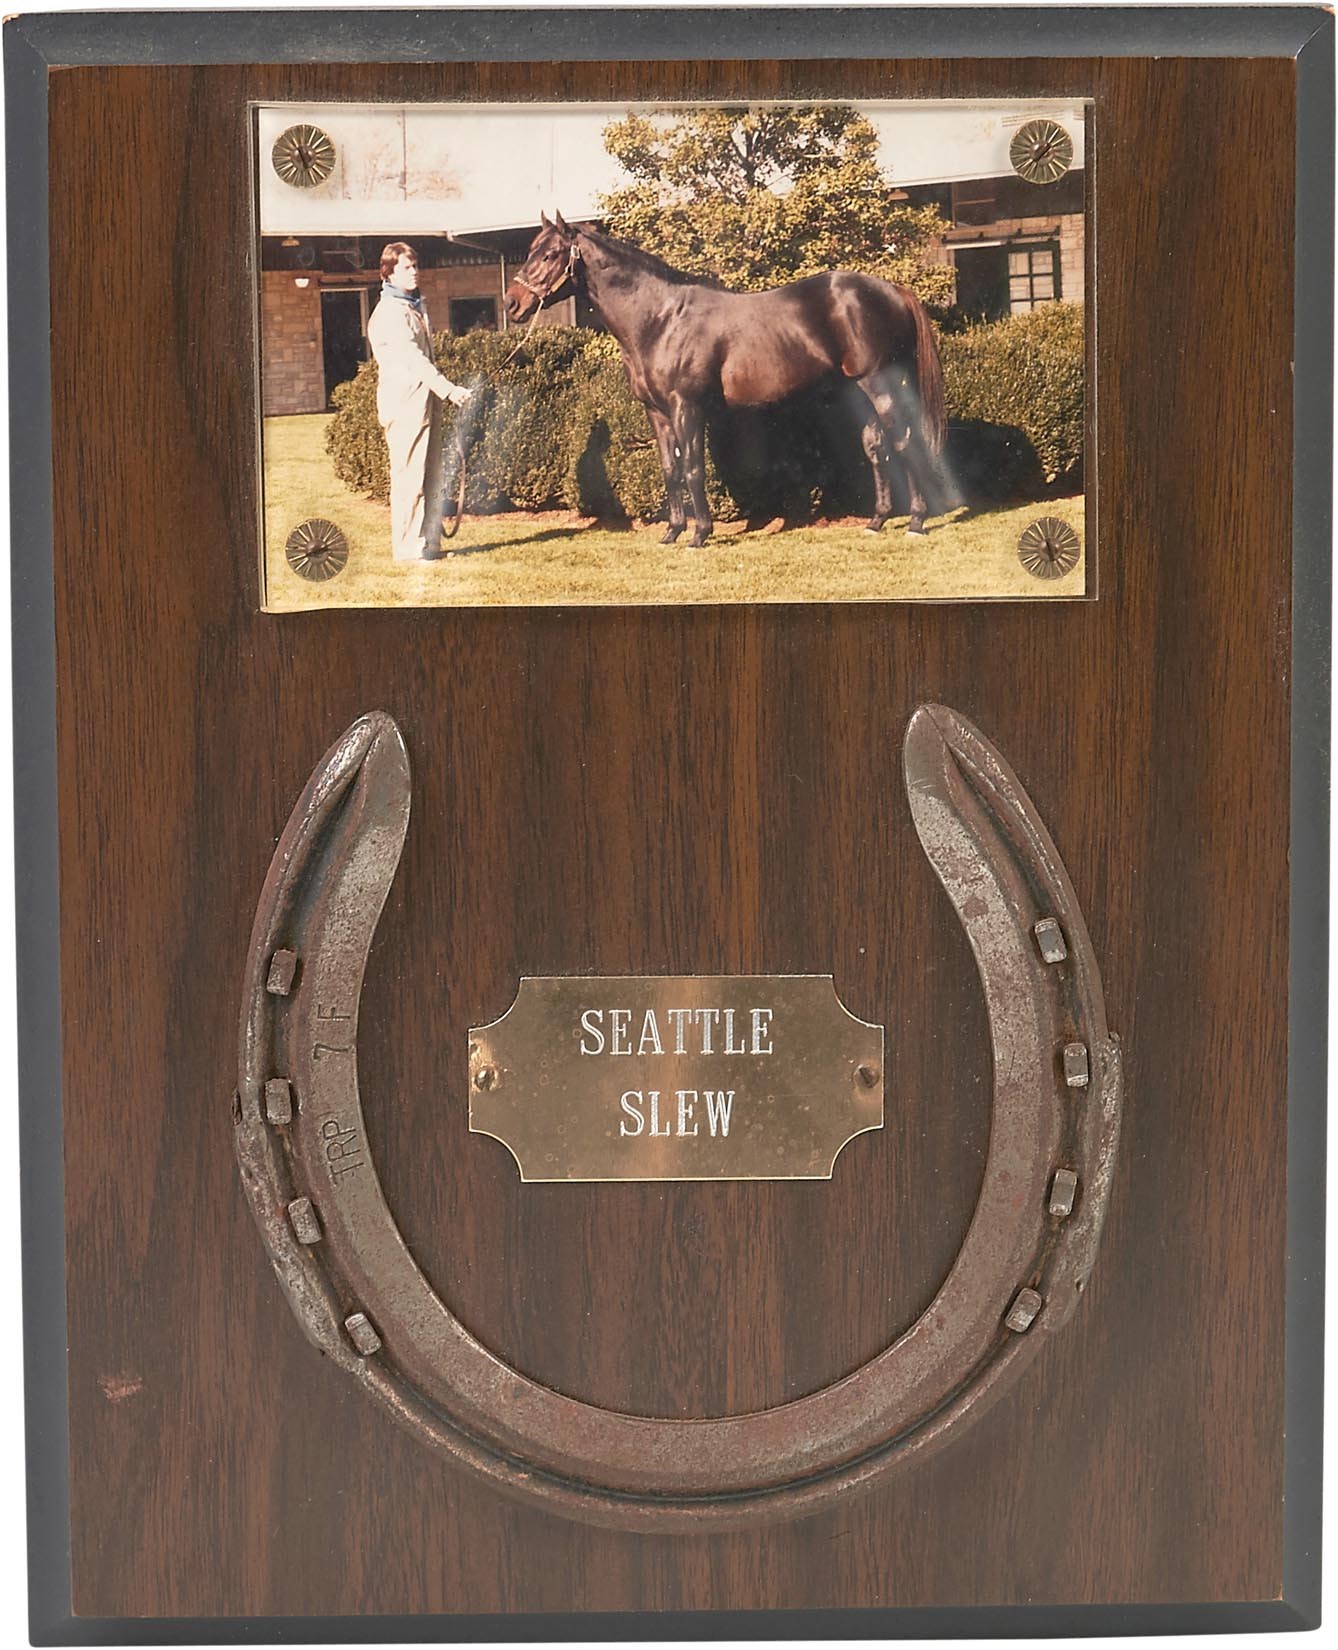 1984 Seattle Slew Worn Horseshoe - from Spendthrift Farm Groomsman (LOA)